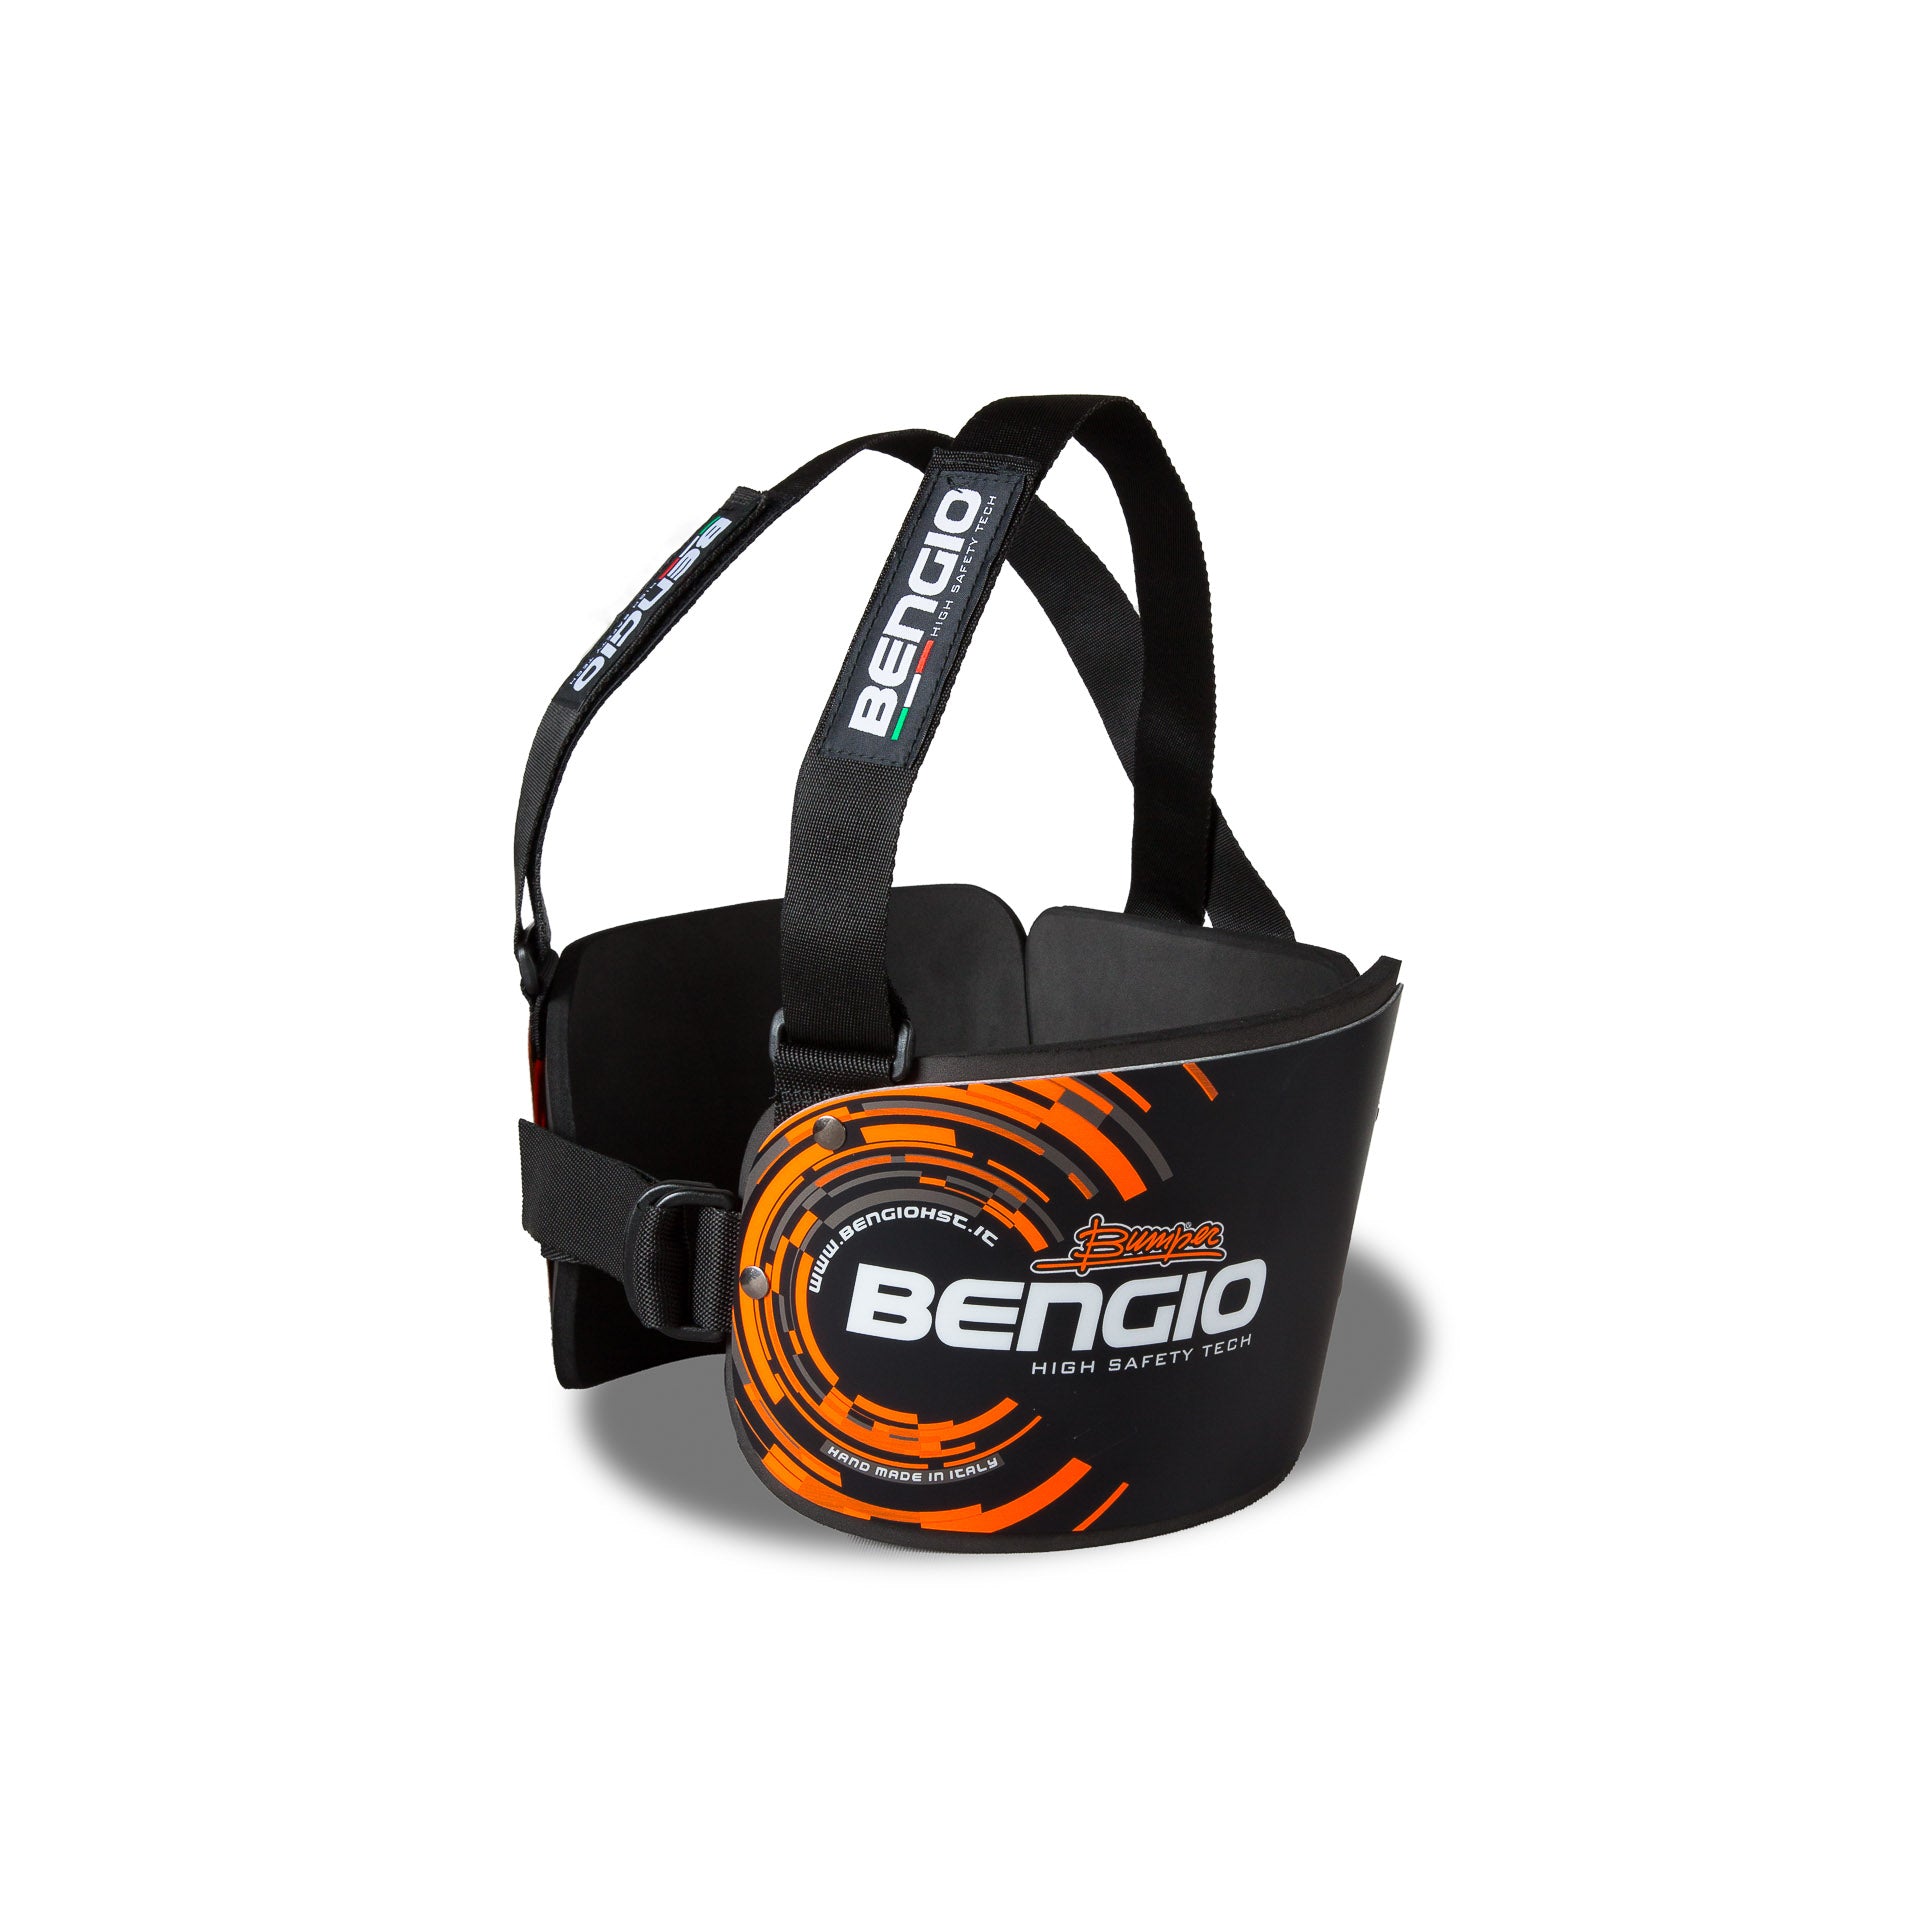 BENGIO STDSMBO BUMPER Standard Захист ребер для картингу, чорний/помаранчевий, розмір S/M Photo-1 